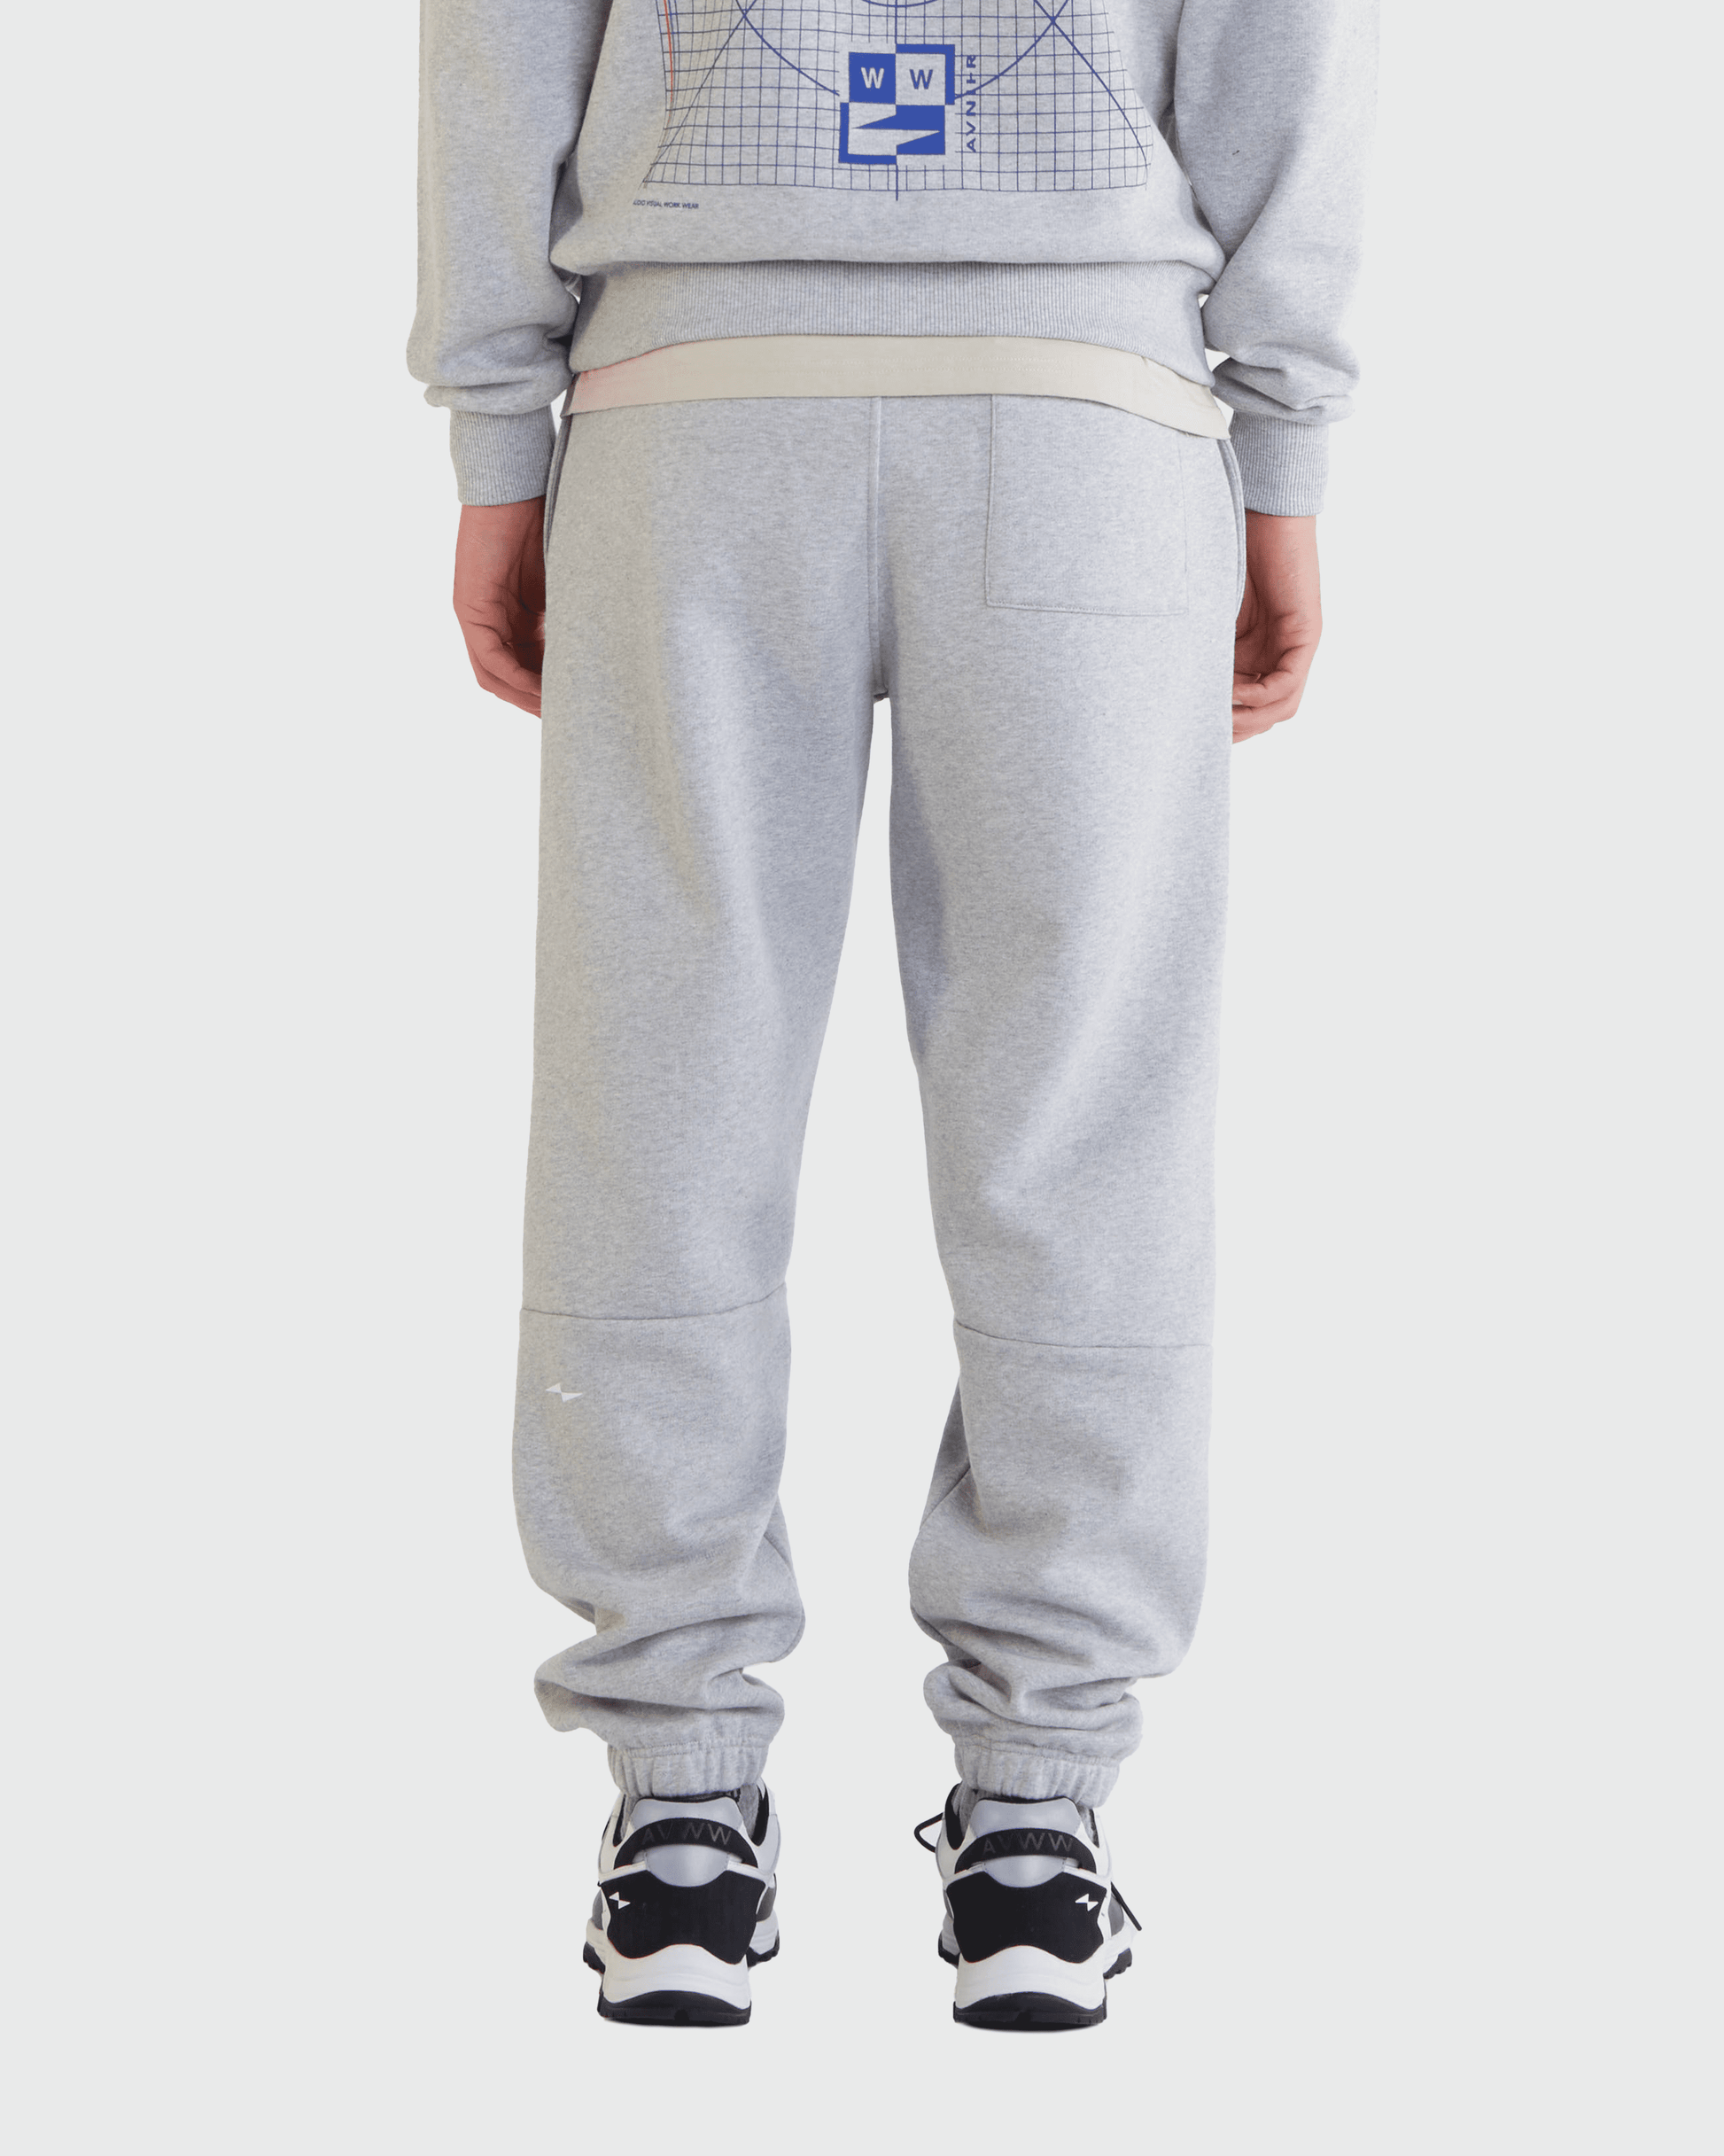 jogging-rest-grey-avnier-resistant-4-silhouette-dos - gris béton